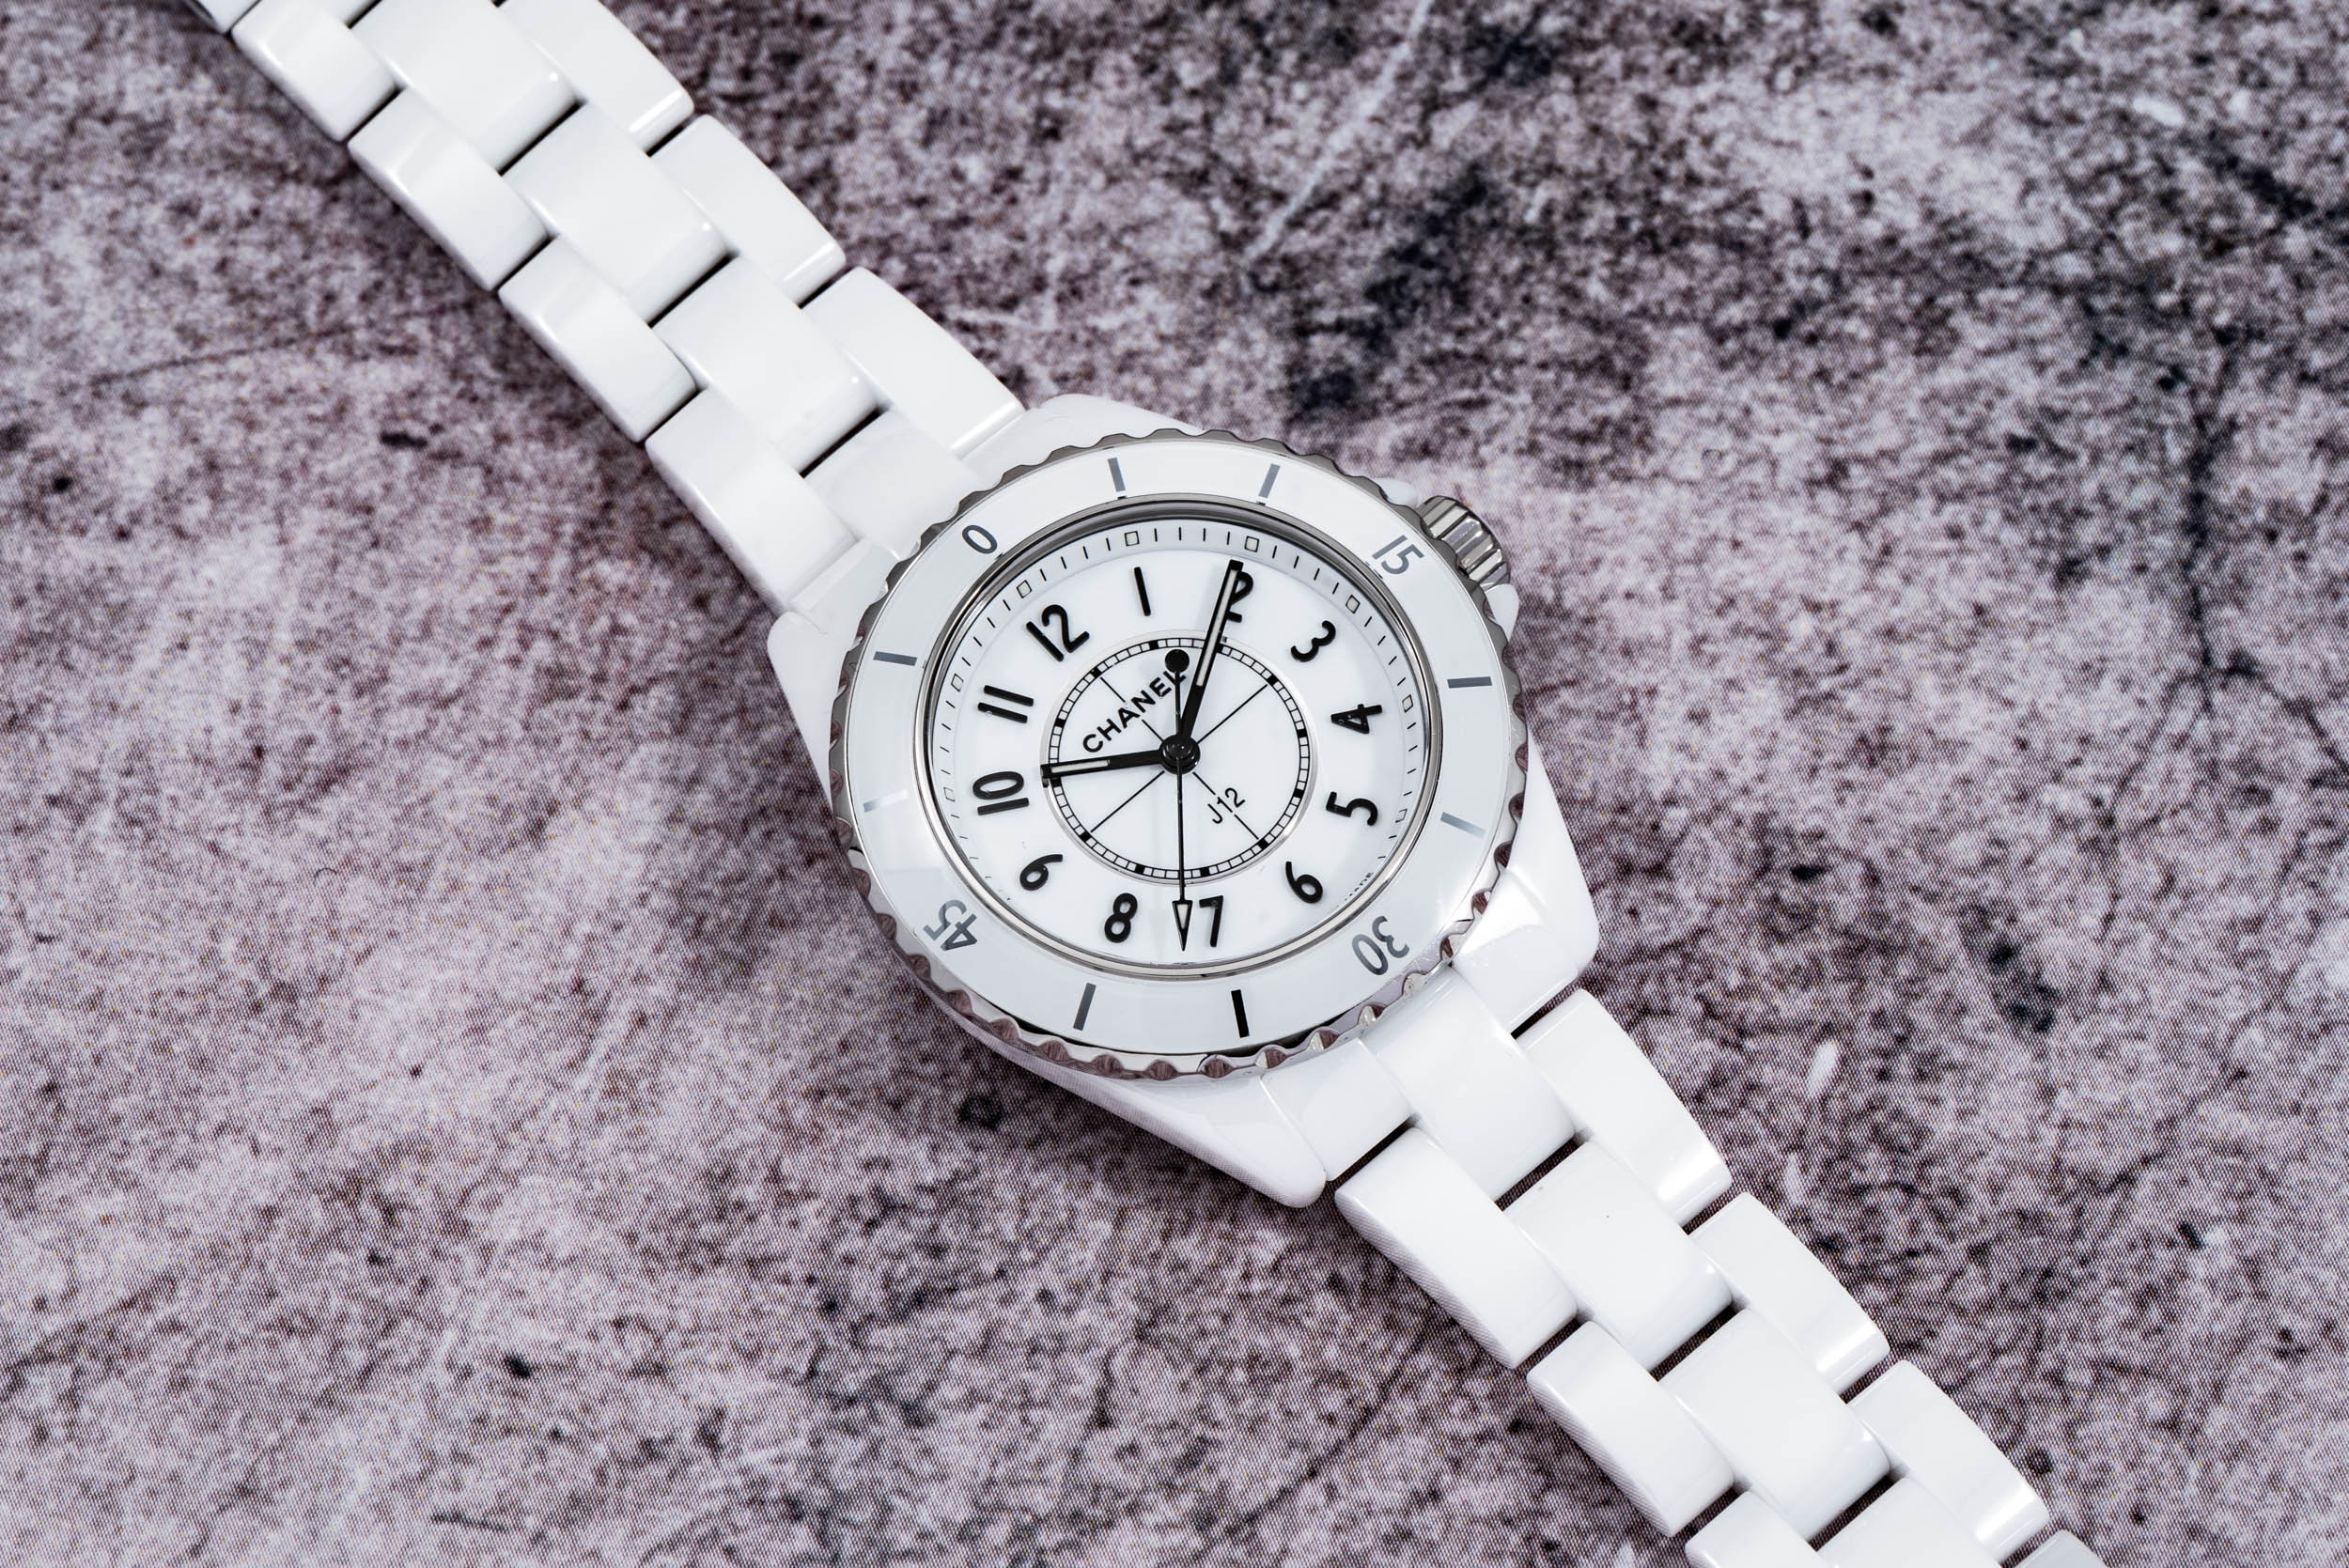 Chanel J12 Automatic Swiss Made Analogue Wristwatch with Box